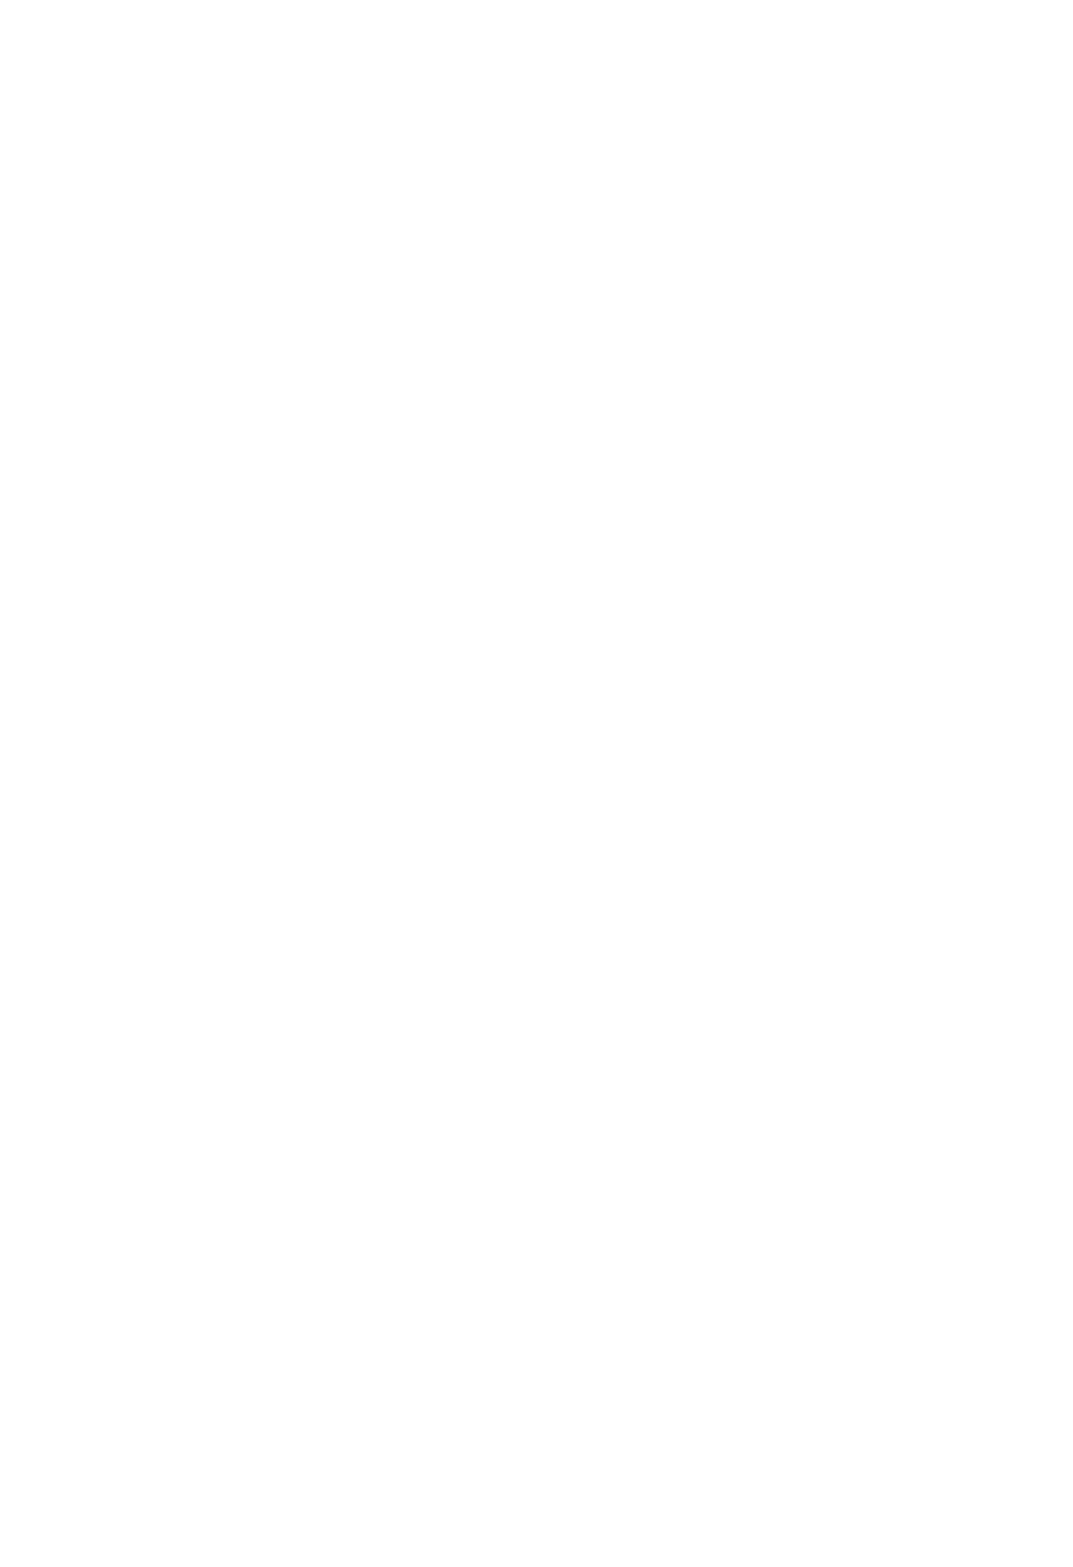 Schaeffler logo pour fonds sombres (PNG transparent)